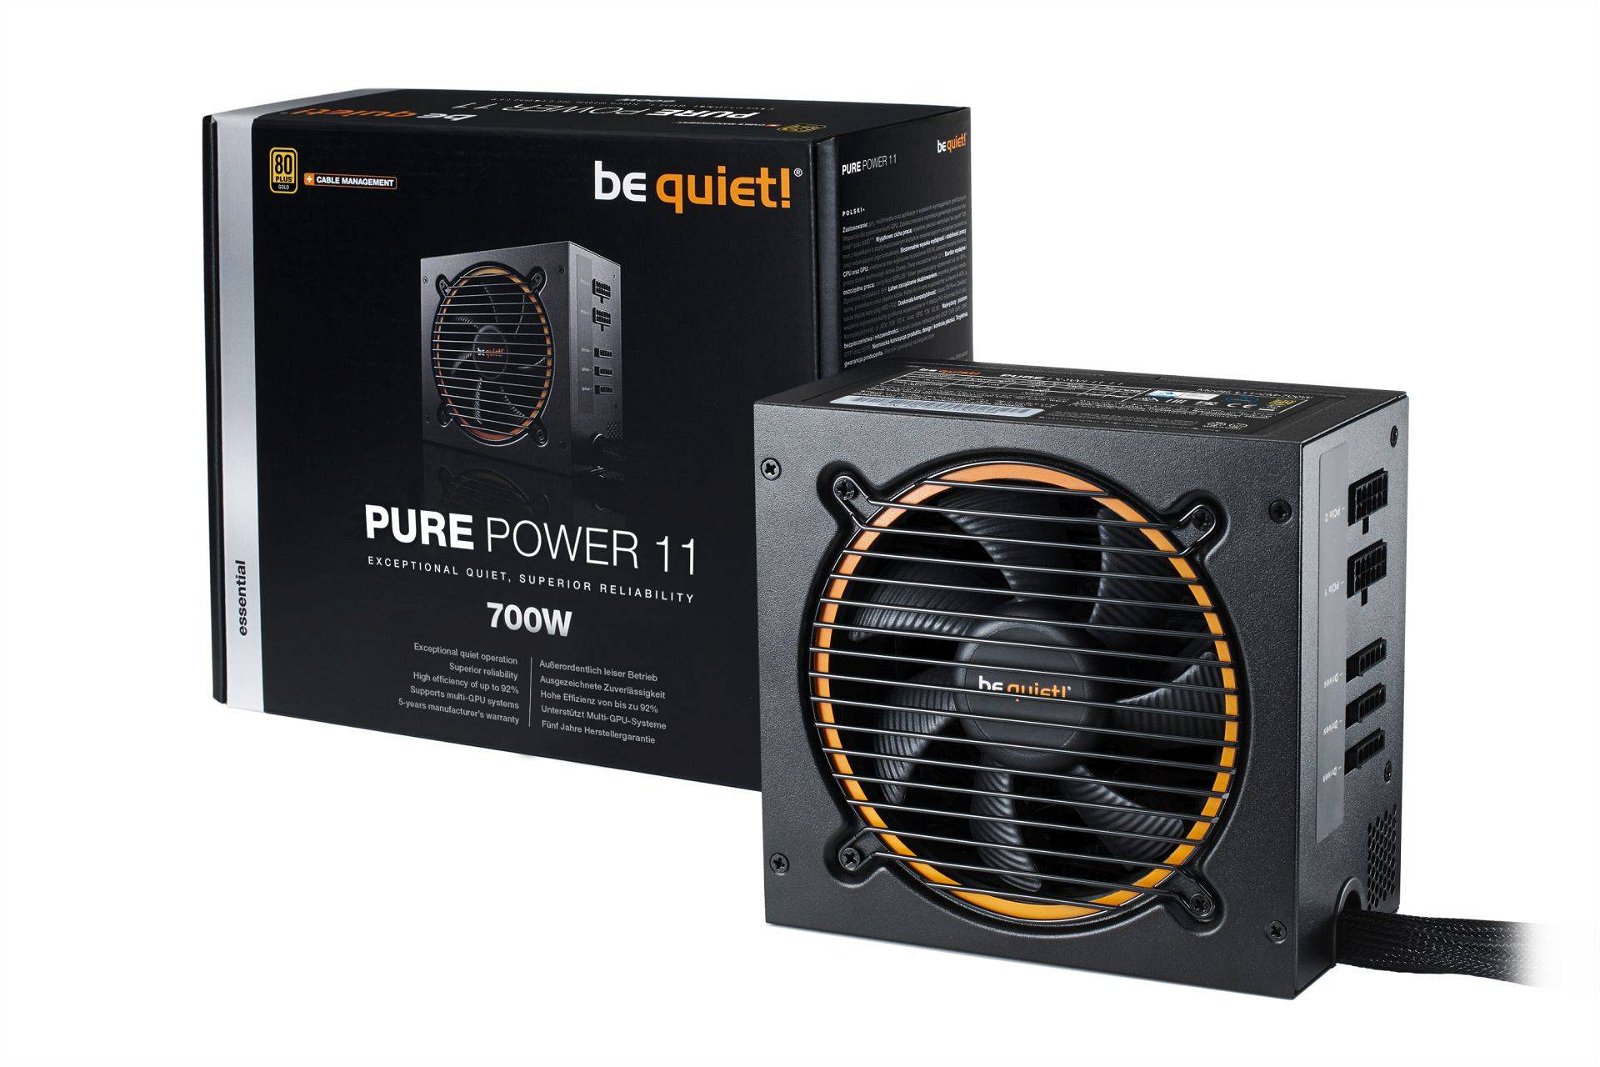 Immagine di Pure Power 11, nuovi alimentatori Be quiet fino a 700 watt